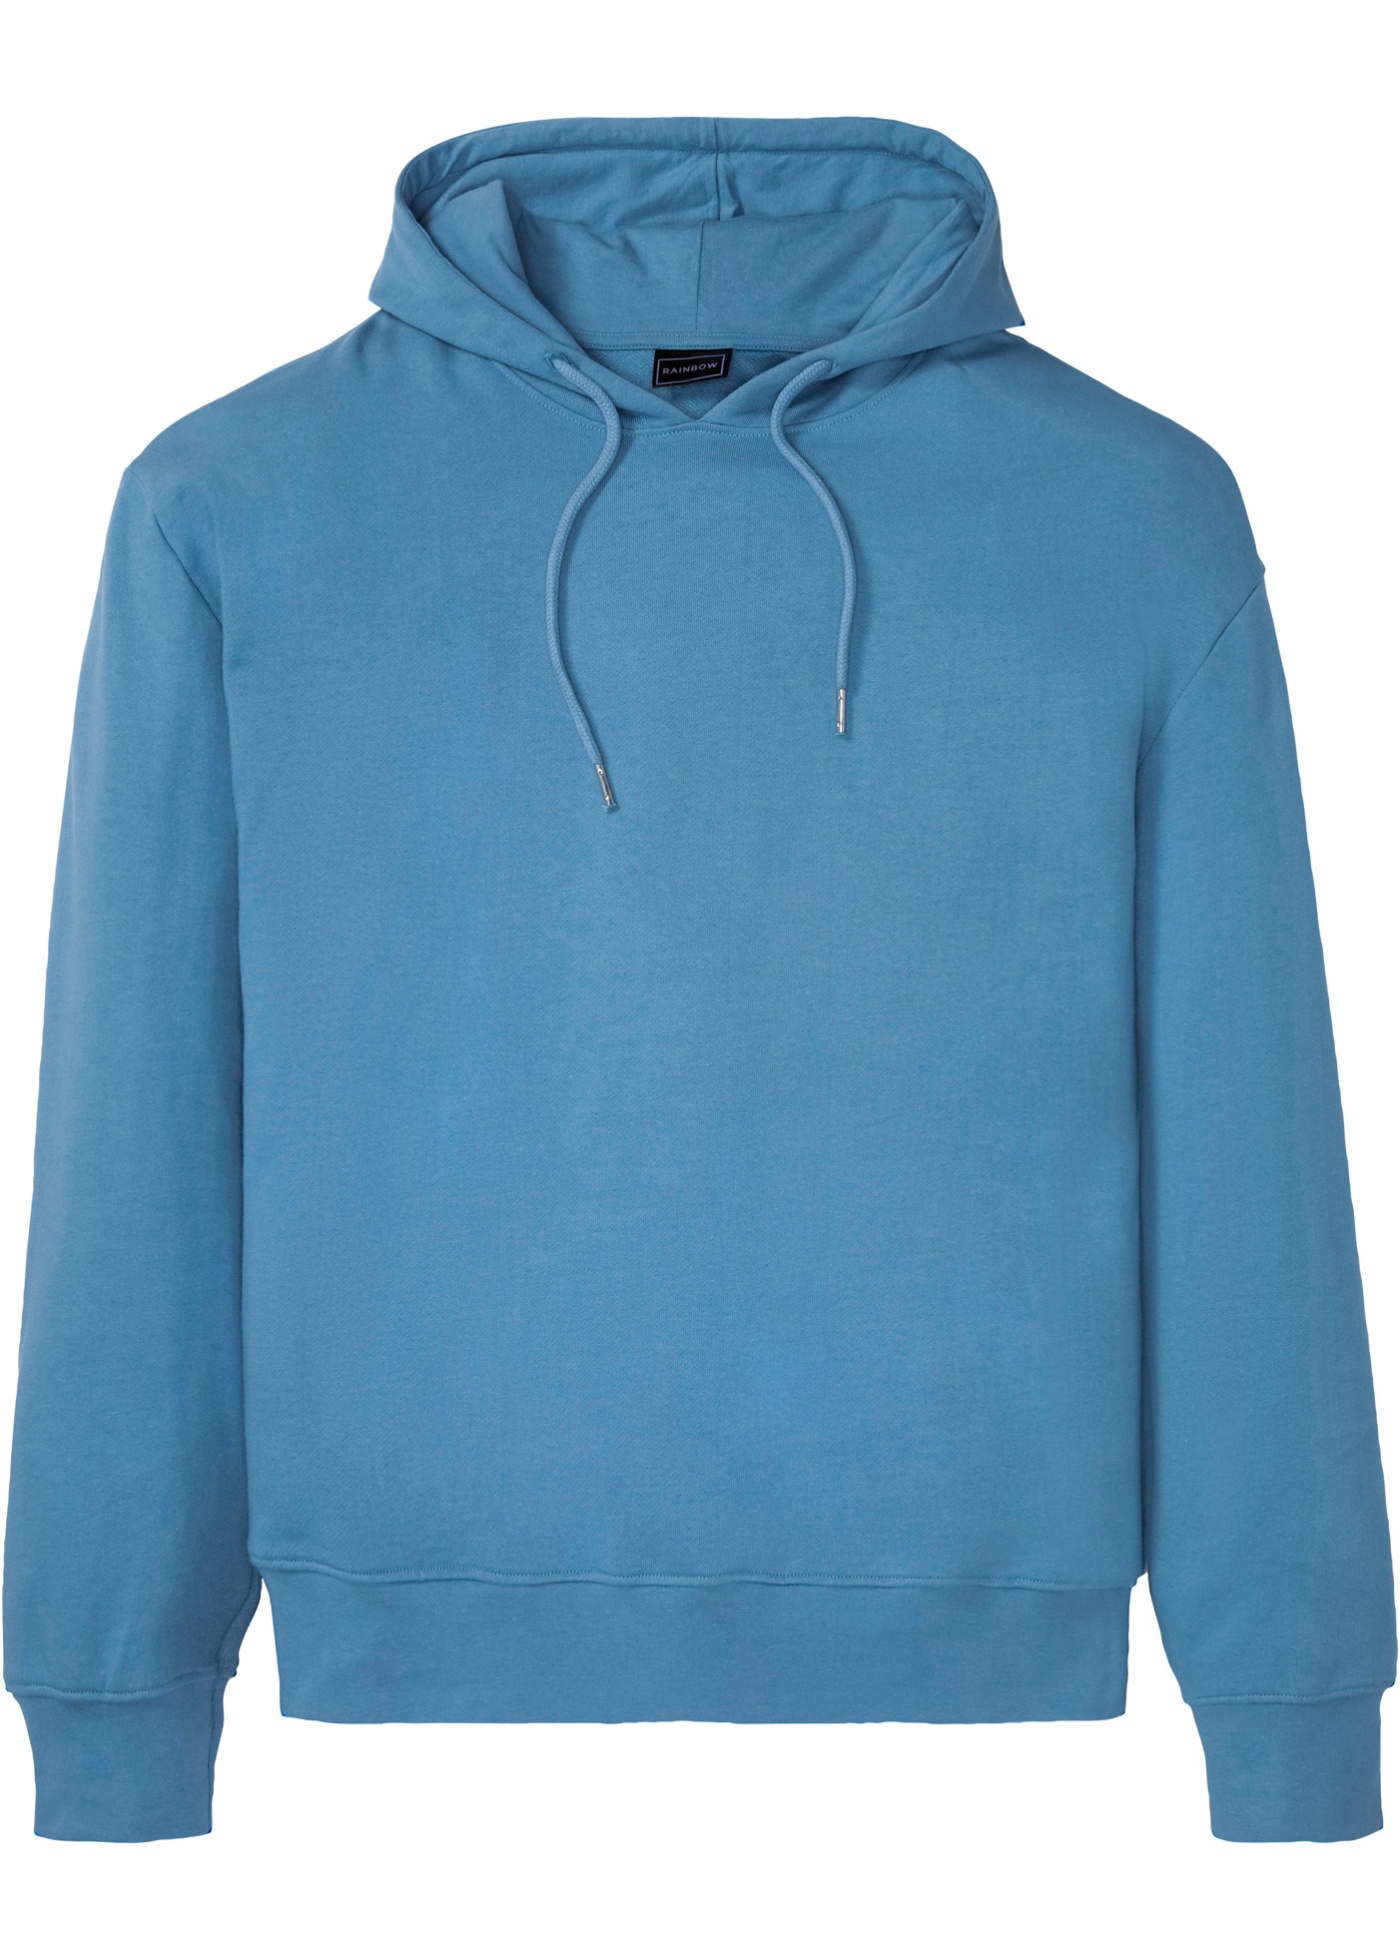 Trendiges Basic Kapuzensweatshirt mit überschnittenen Schultern. (92050495) in matt blau